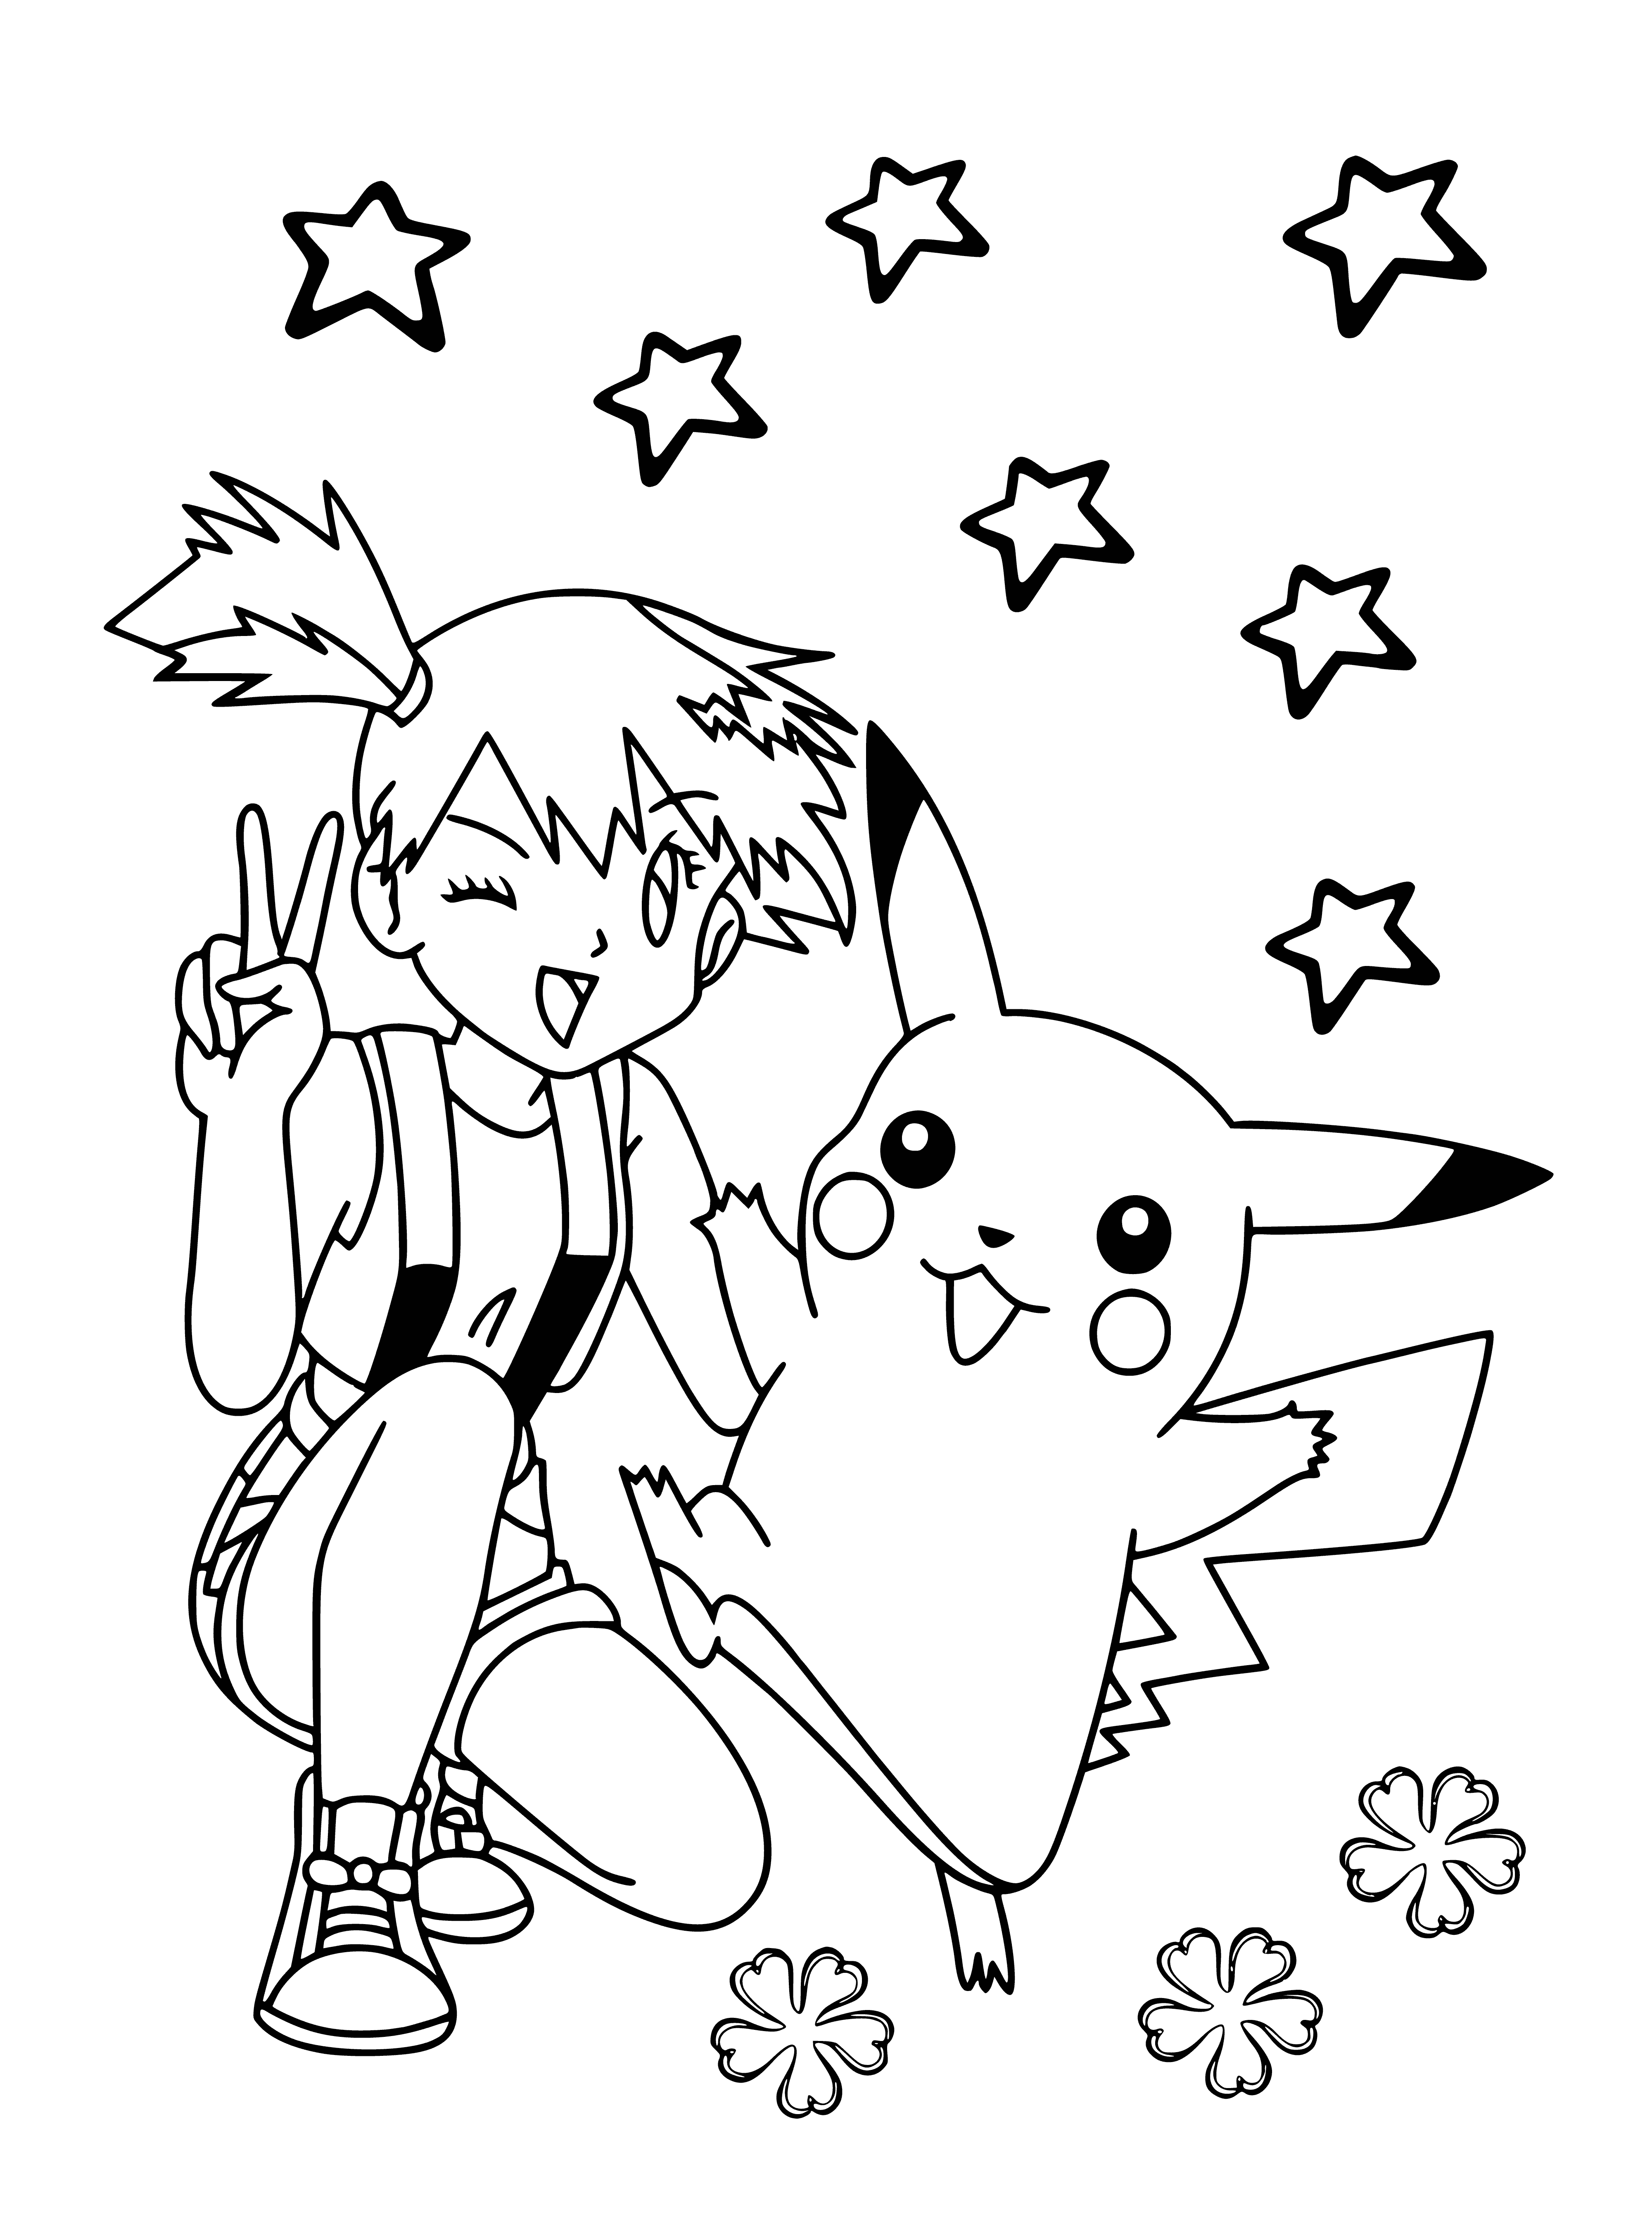 Misty et Pikachu coloriage